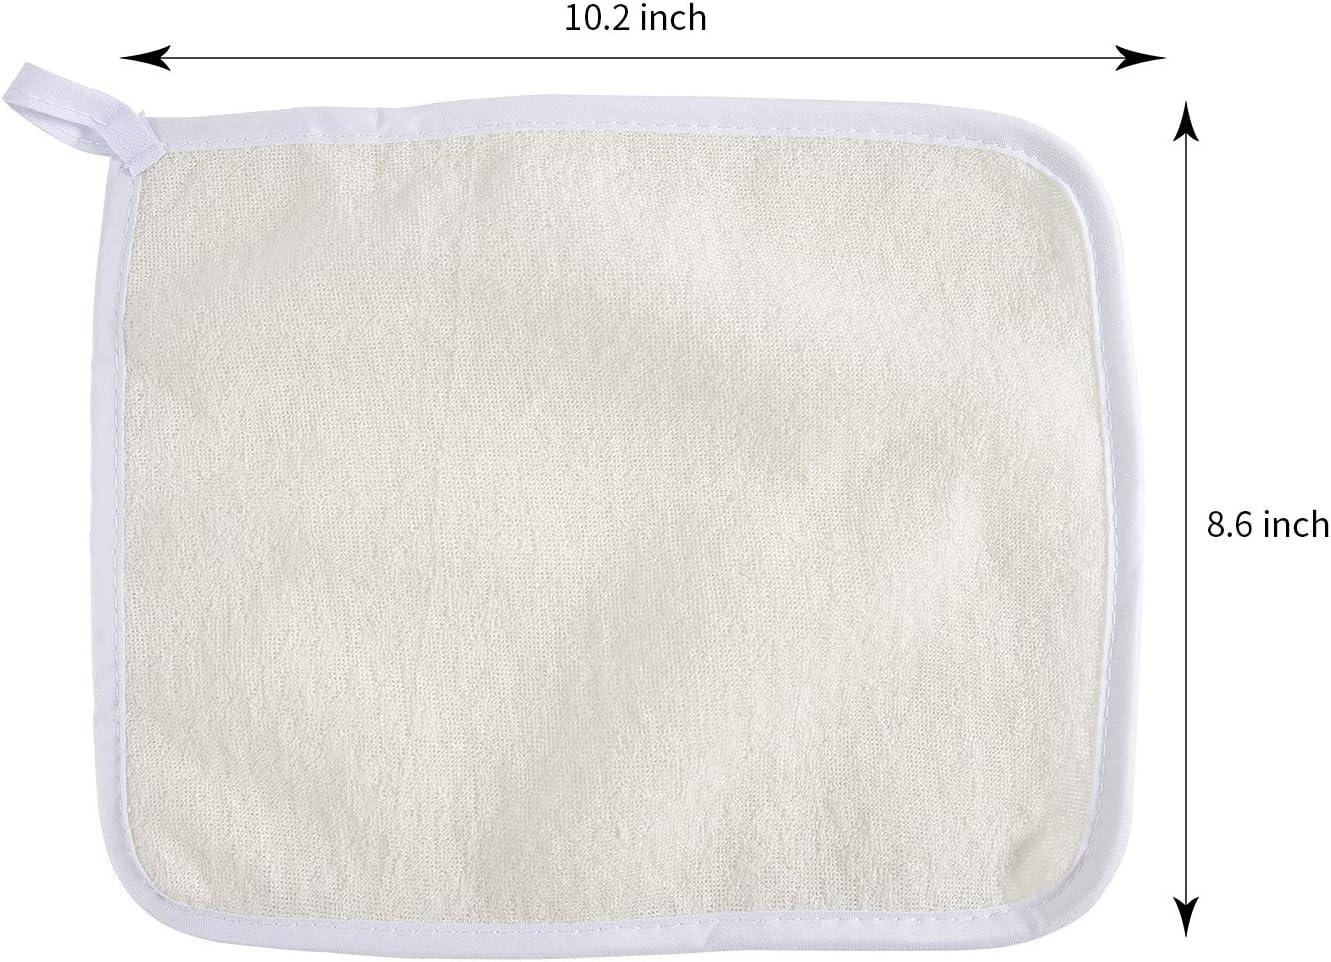 Exfoliating Face Body Wash Cloths Towel Soft Weave Bath Cloth Dual